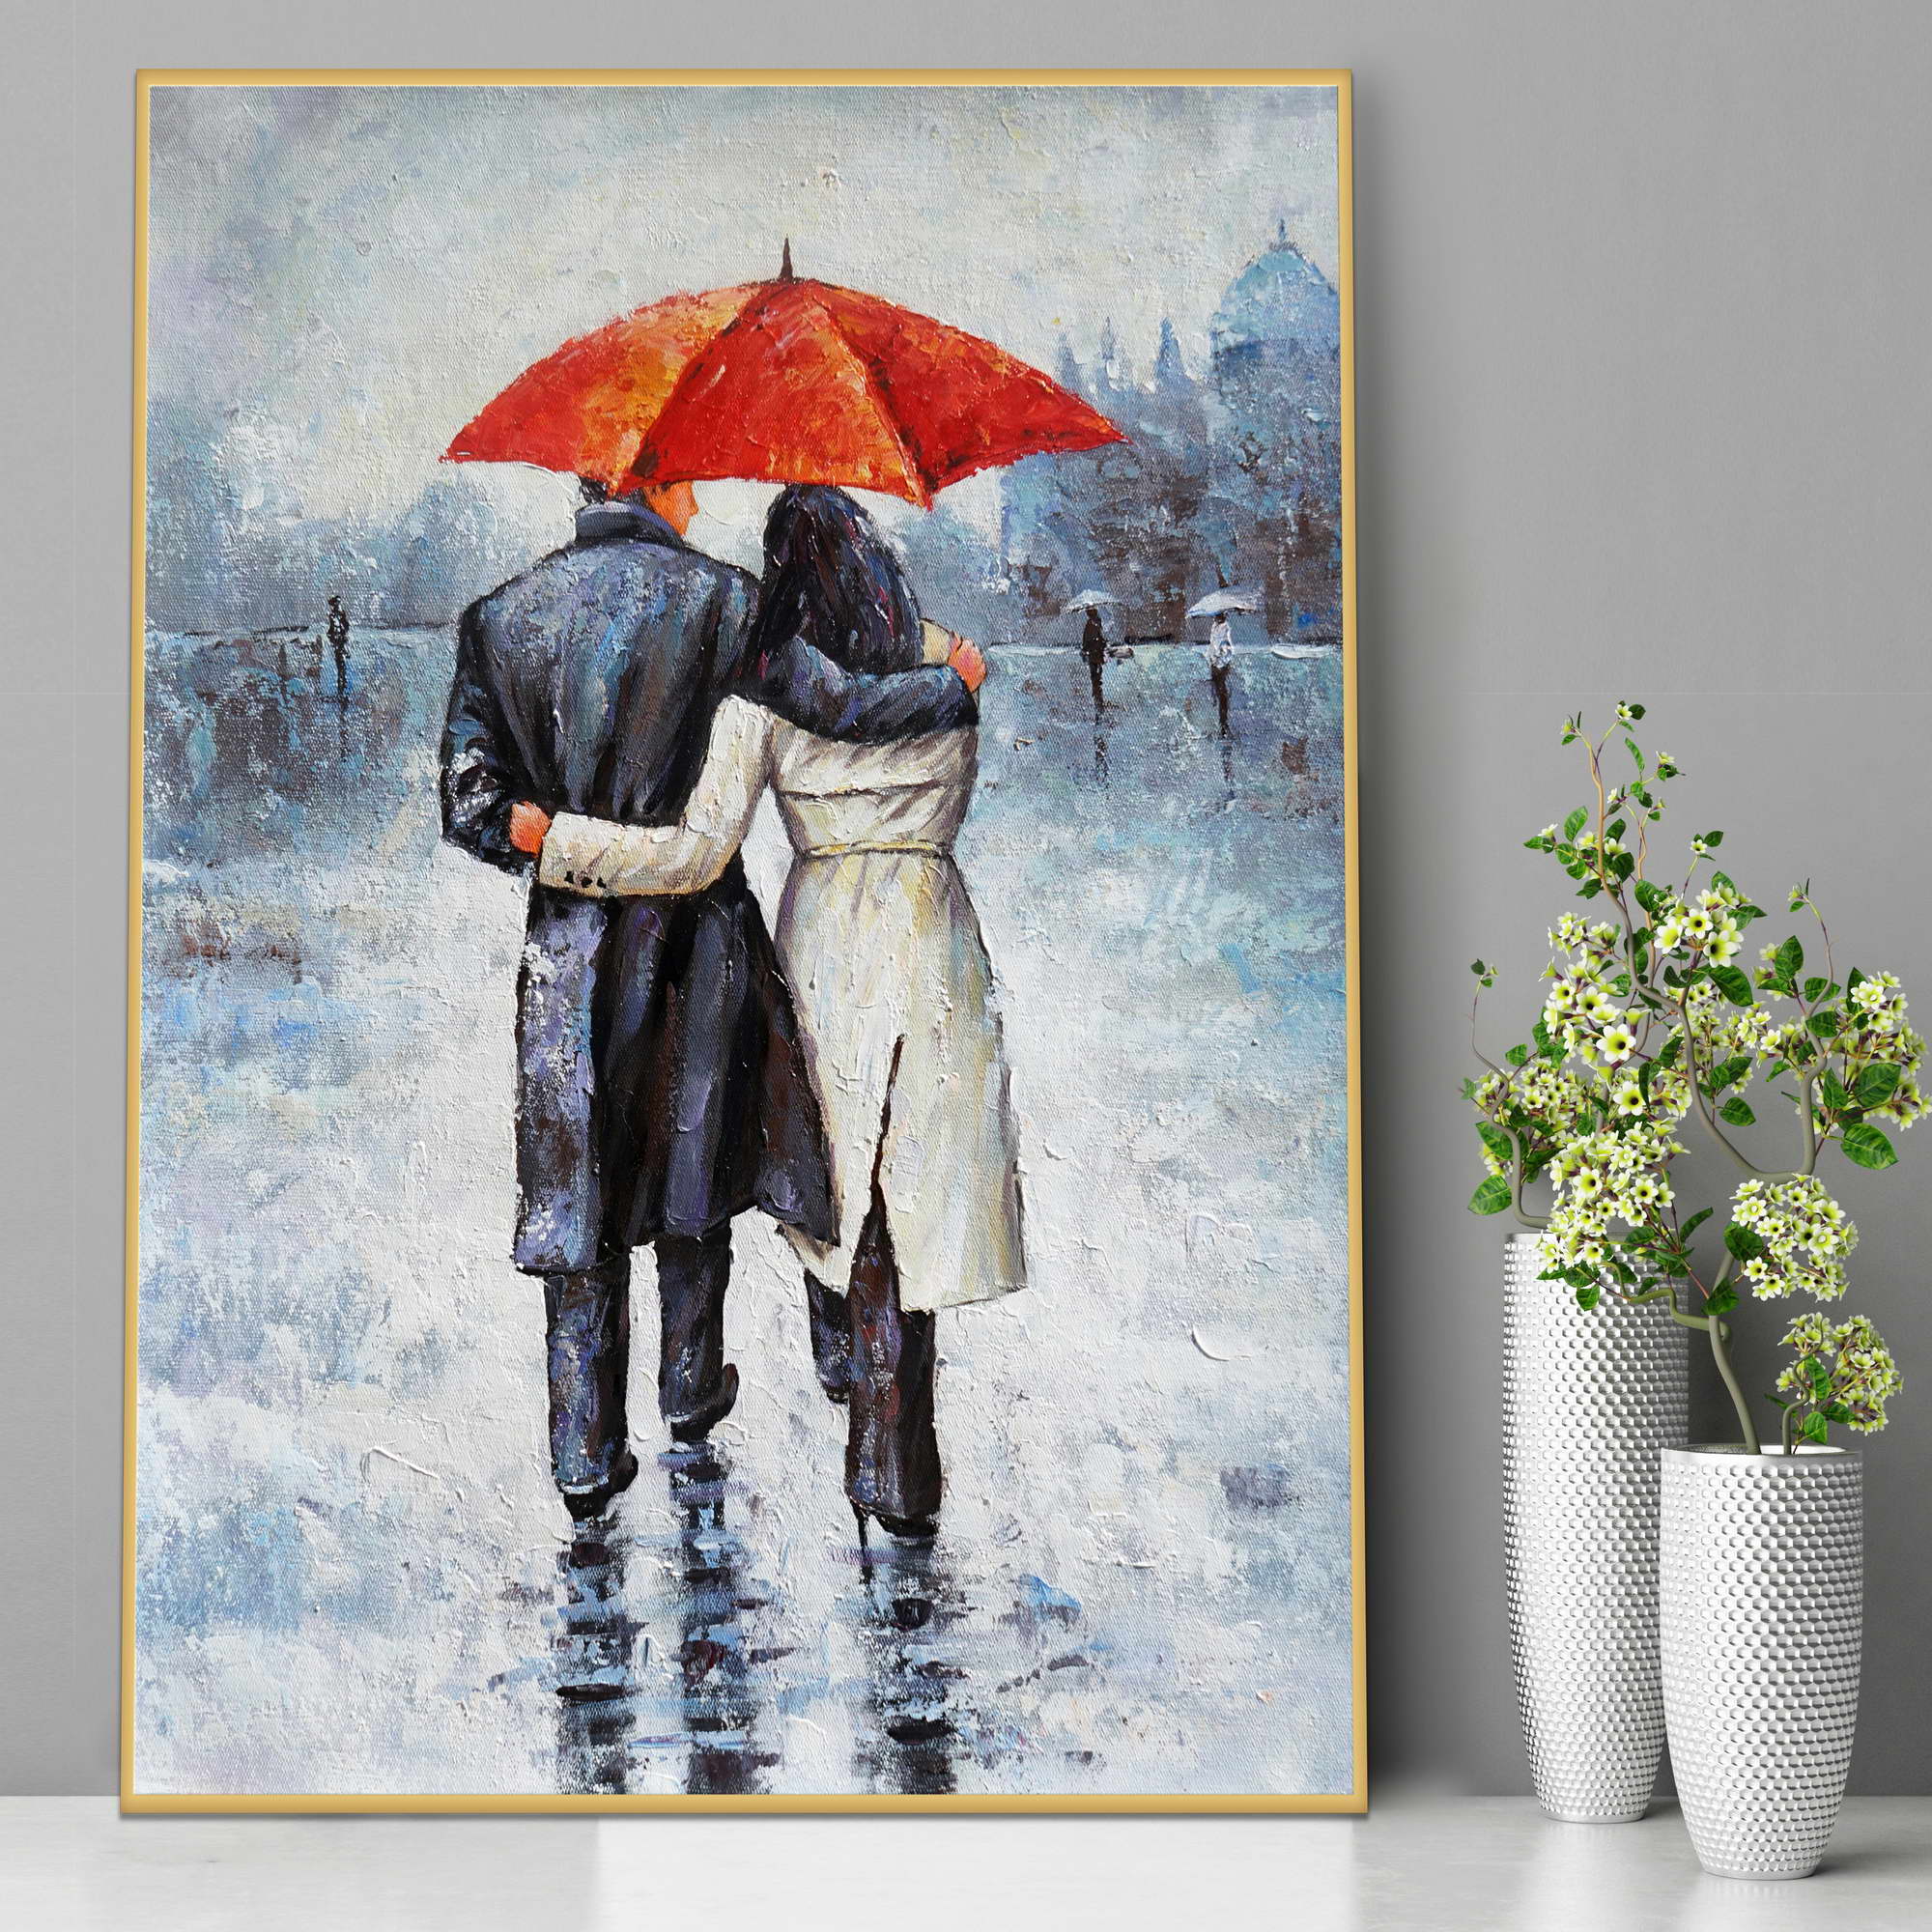 Dipinto di coppia abbracciata sotto un ombrello rosso su sfondo urbano